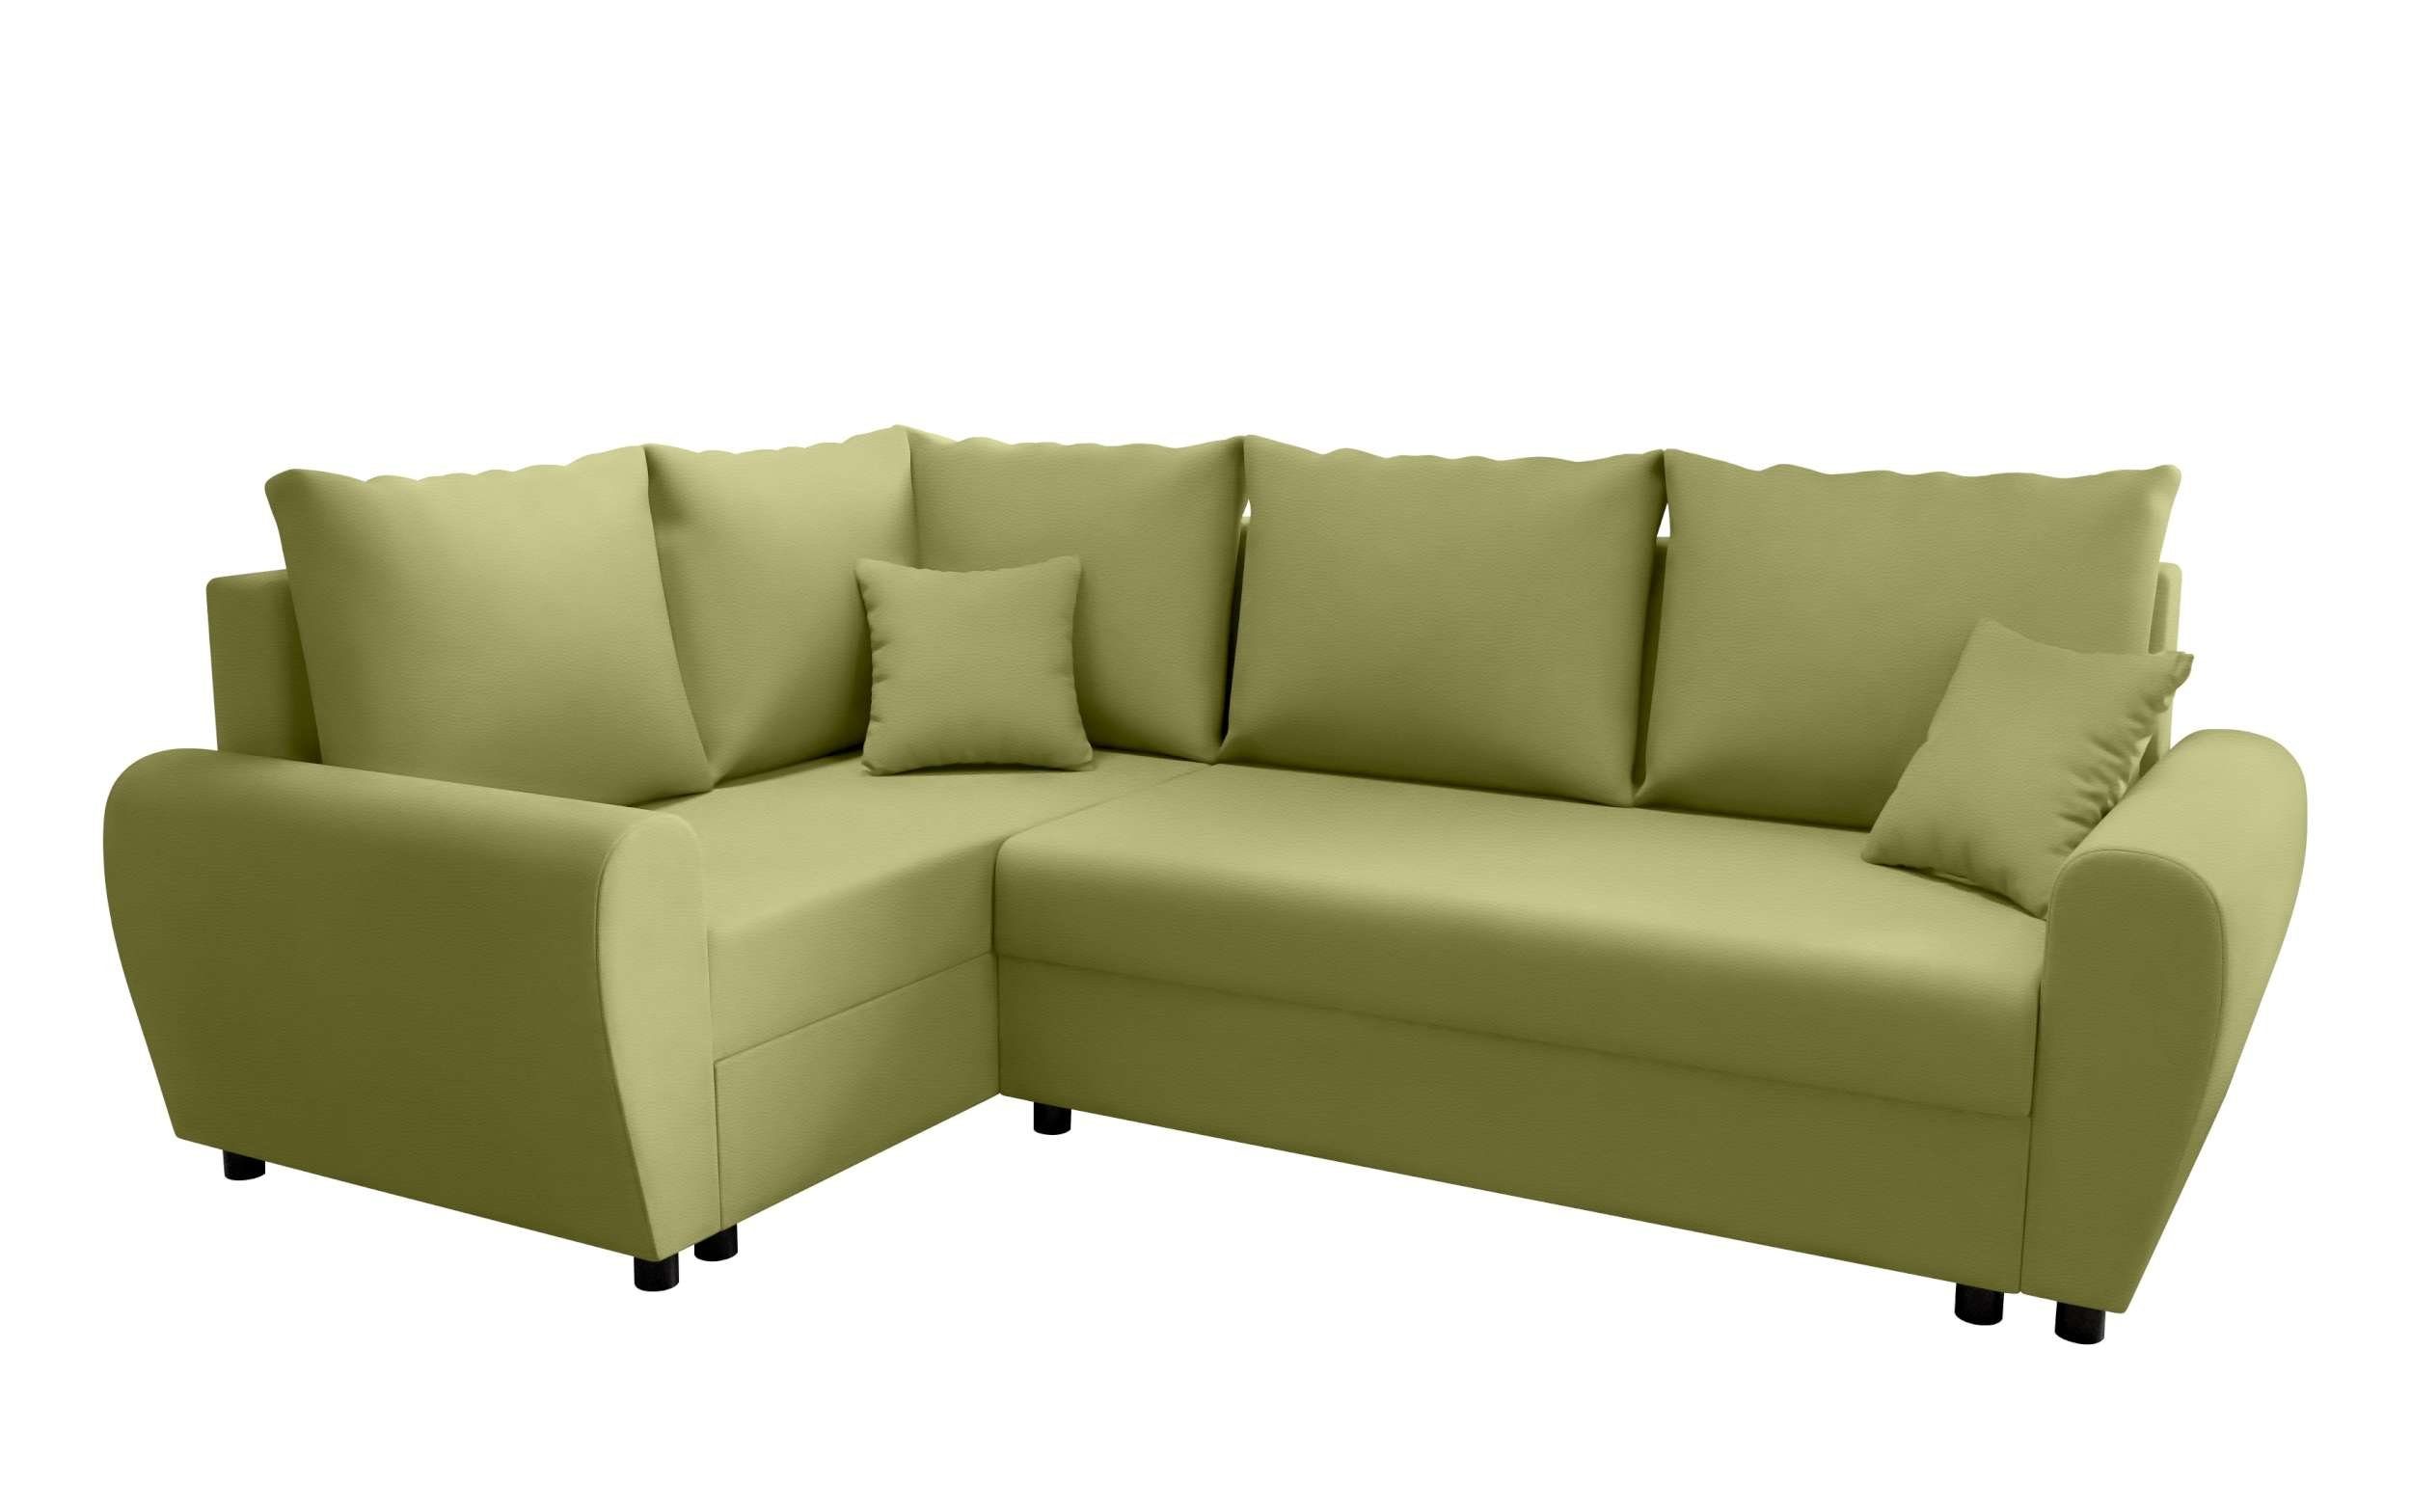 Bettfunktion, Design mit Valence, mit Eckcouch, Stylefy Sitzkomfort, Modern Sofa, L-Form, Bettkasten, Ecksofa